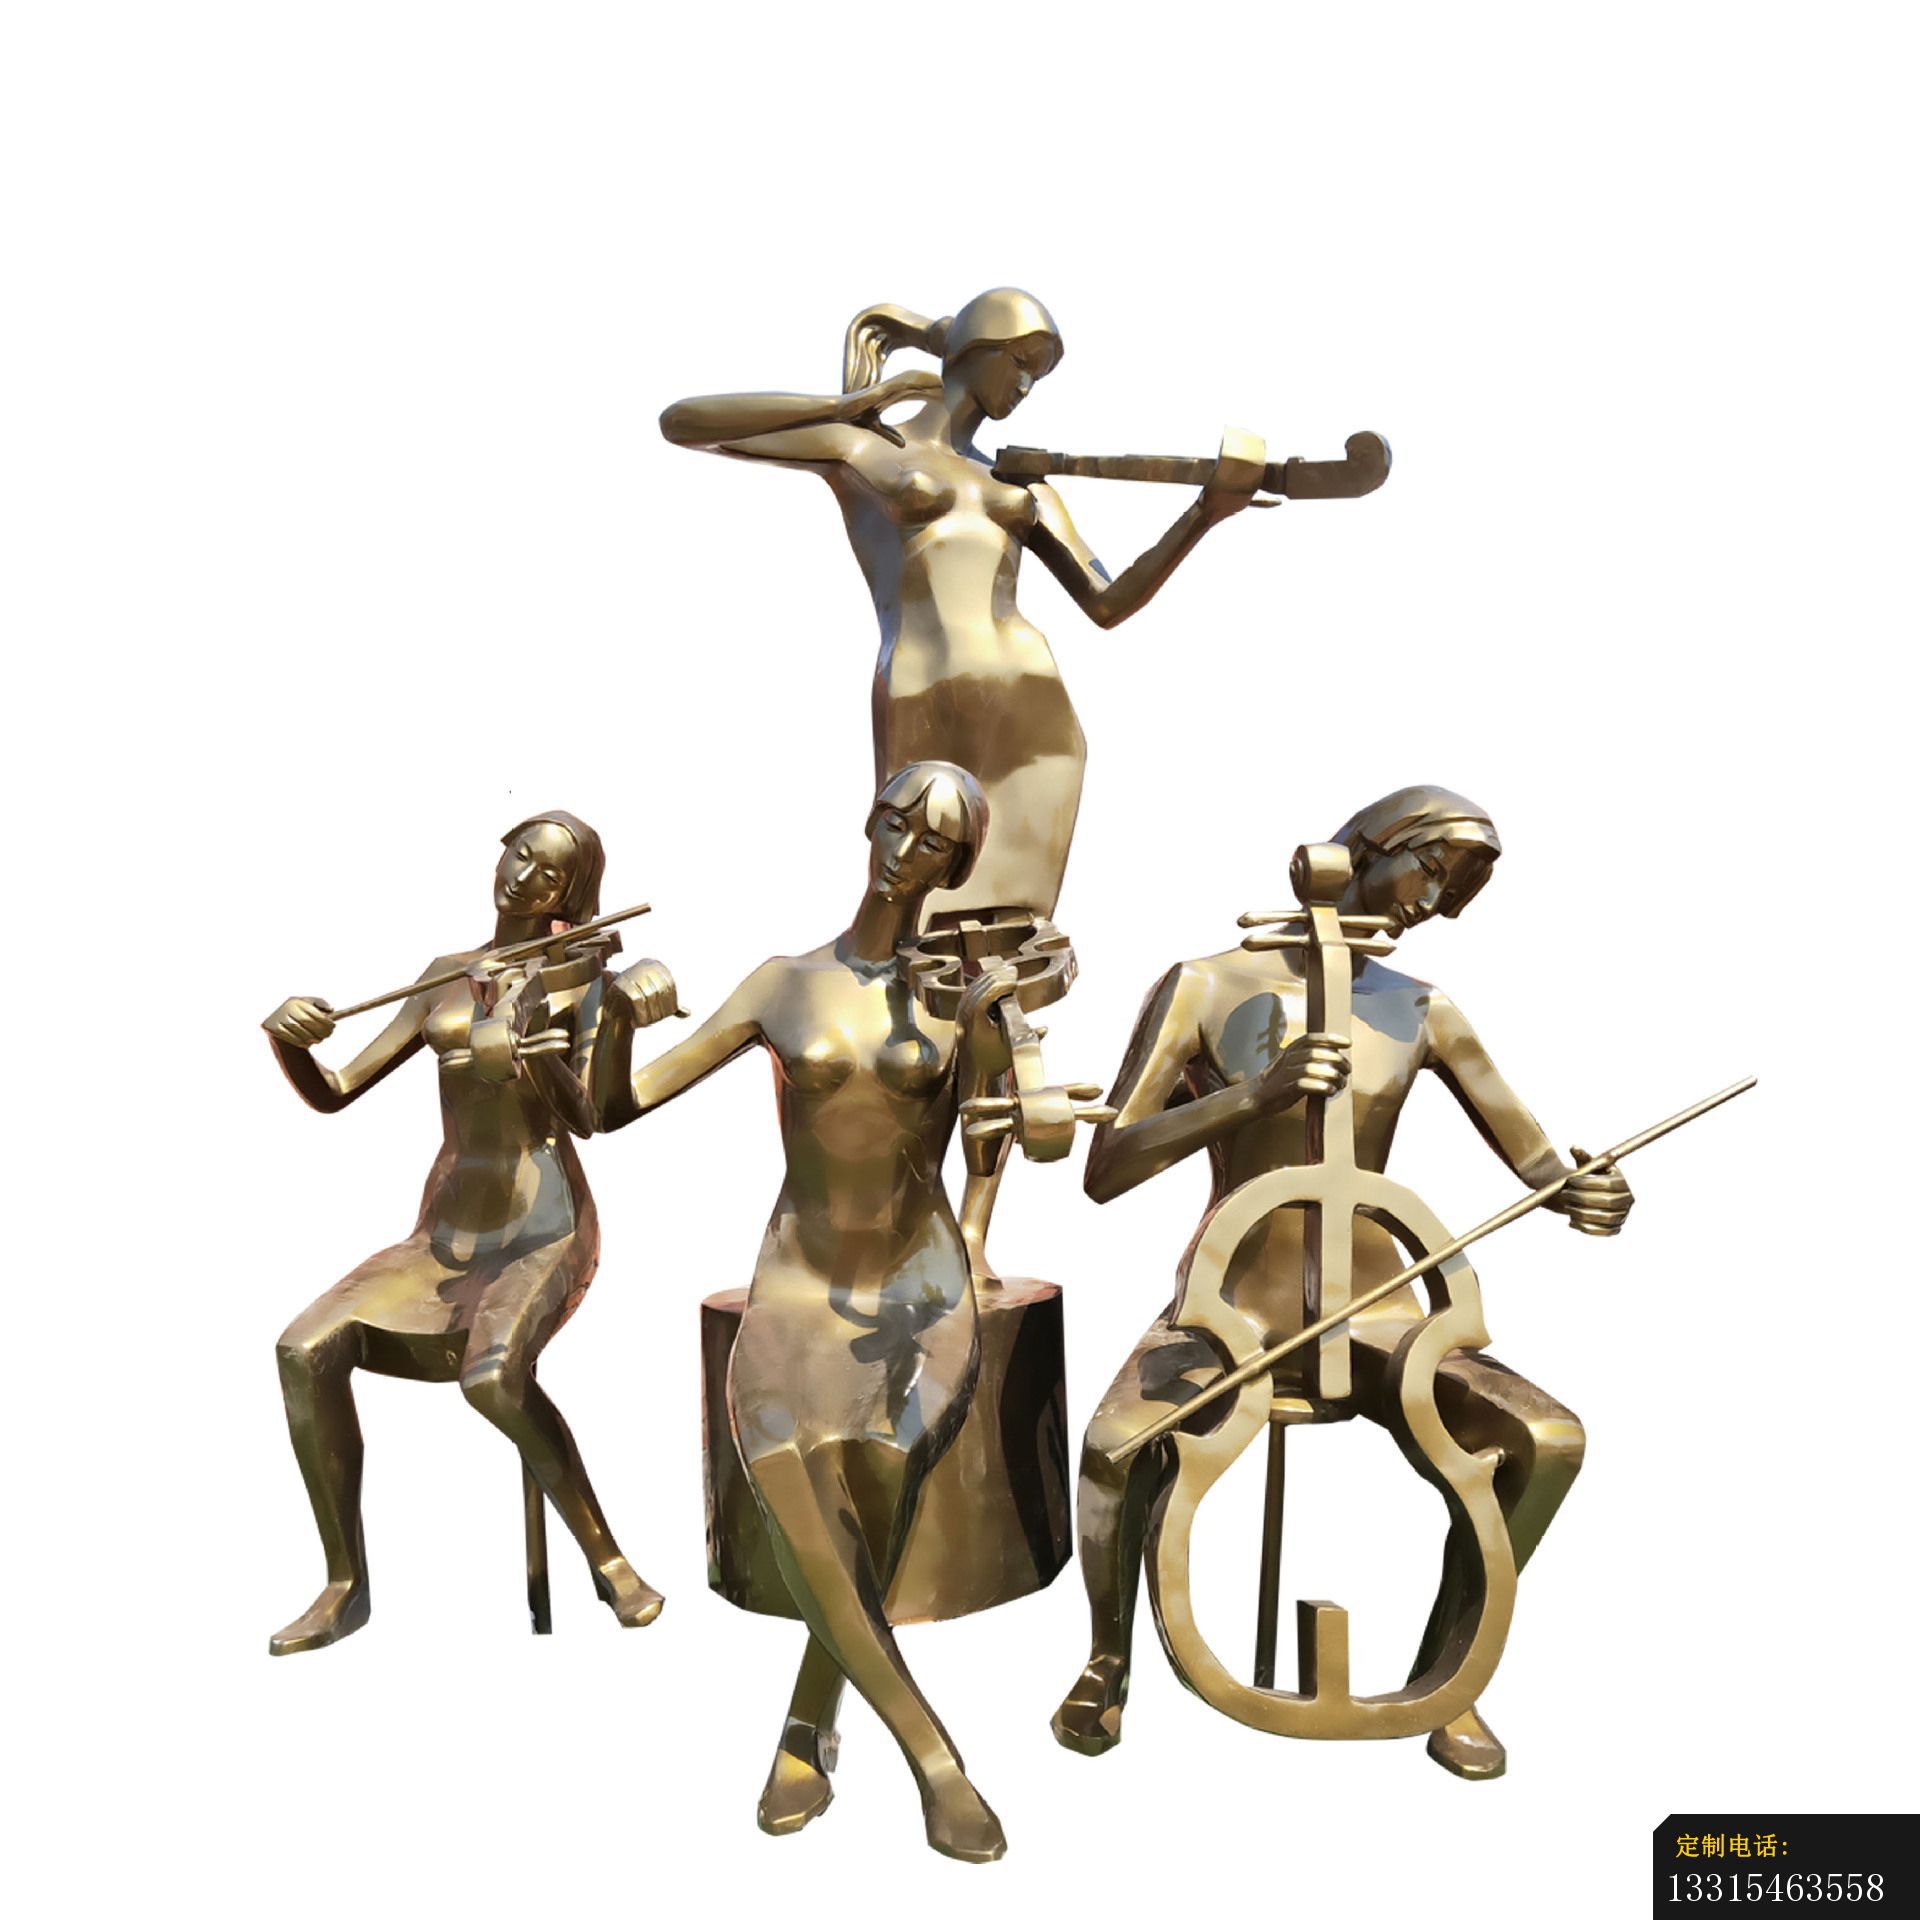 玻璃钢仿铜抽象音乐人物大型乐队音乐人物雕塑吹拉弹唱人物雕塑6056_1920*1920